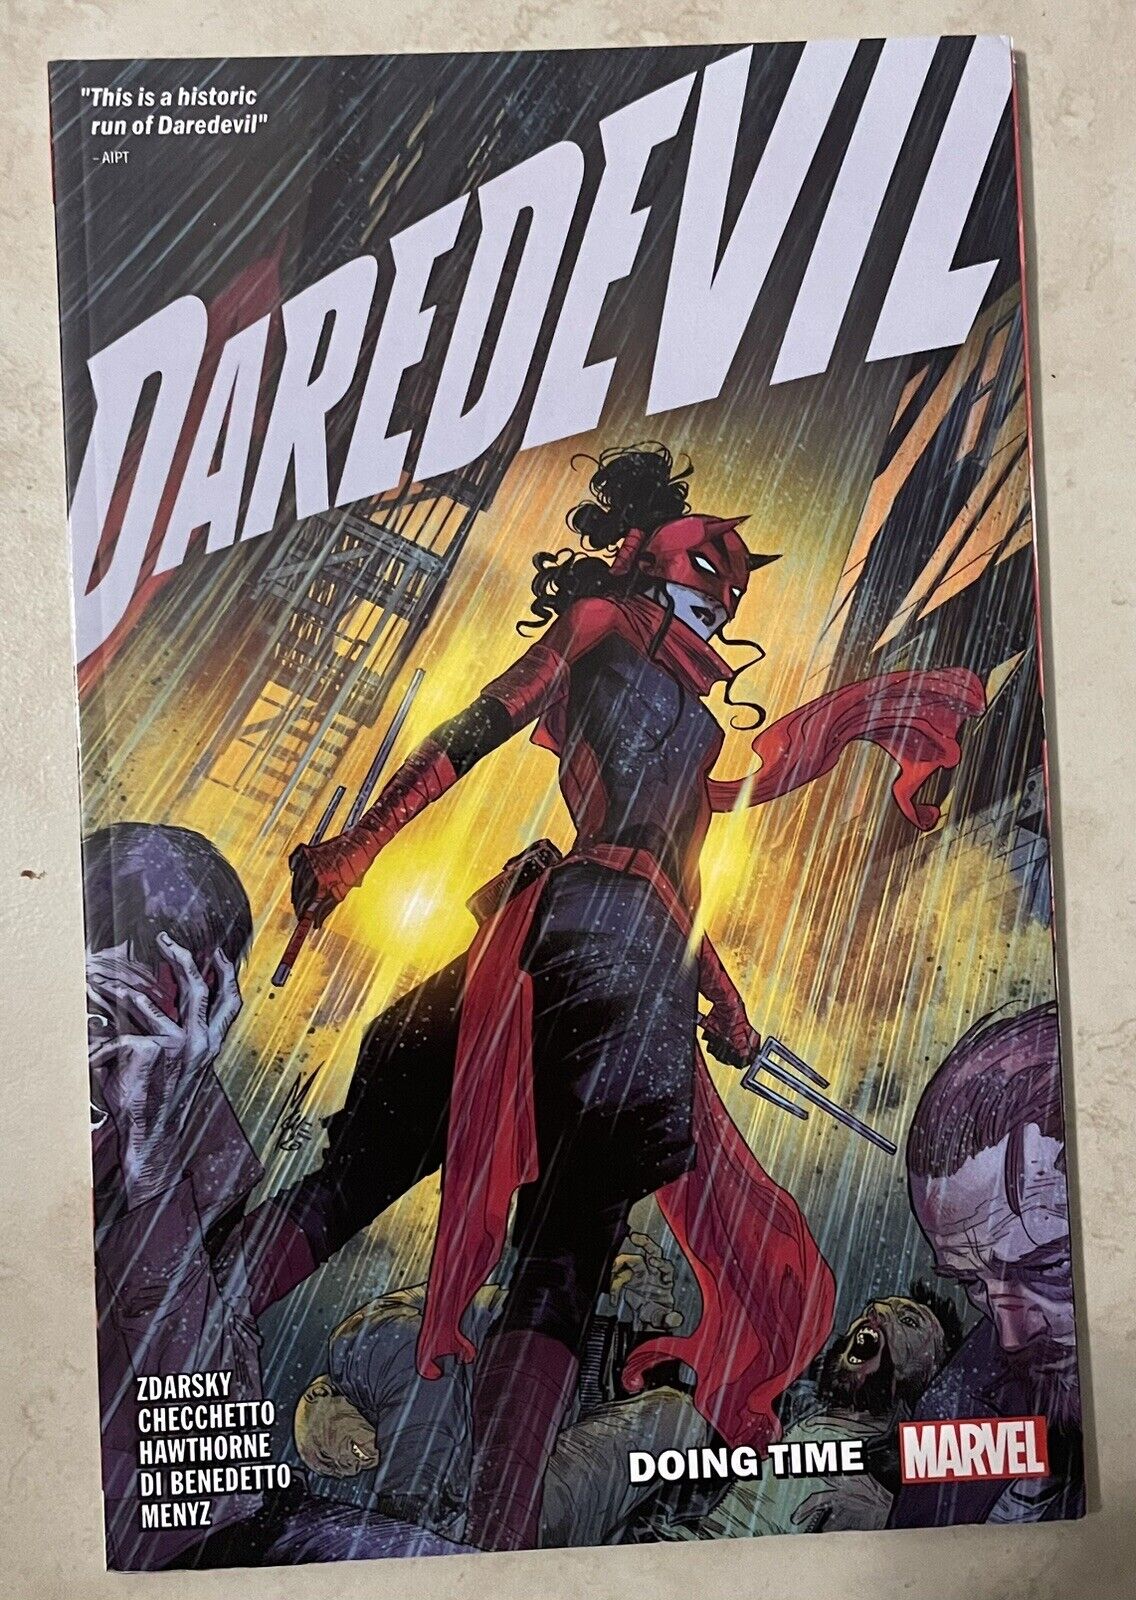 Marvel Comics Daredevil - Doing Time by Chip Zdarsky (Trade Paperback, 2021)